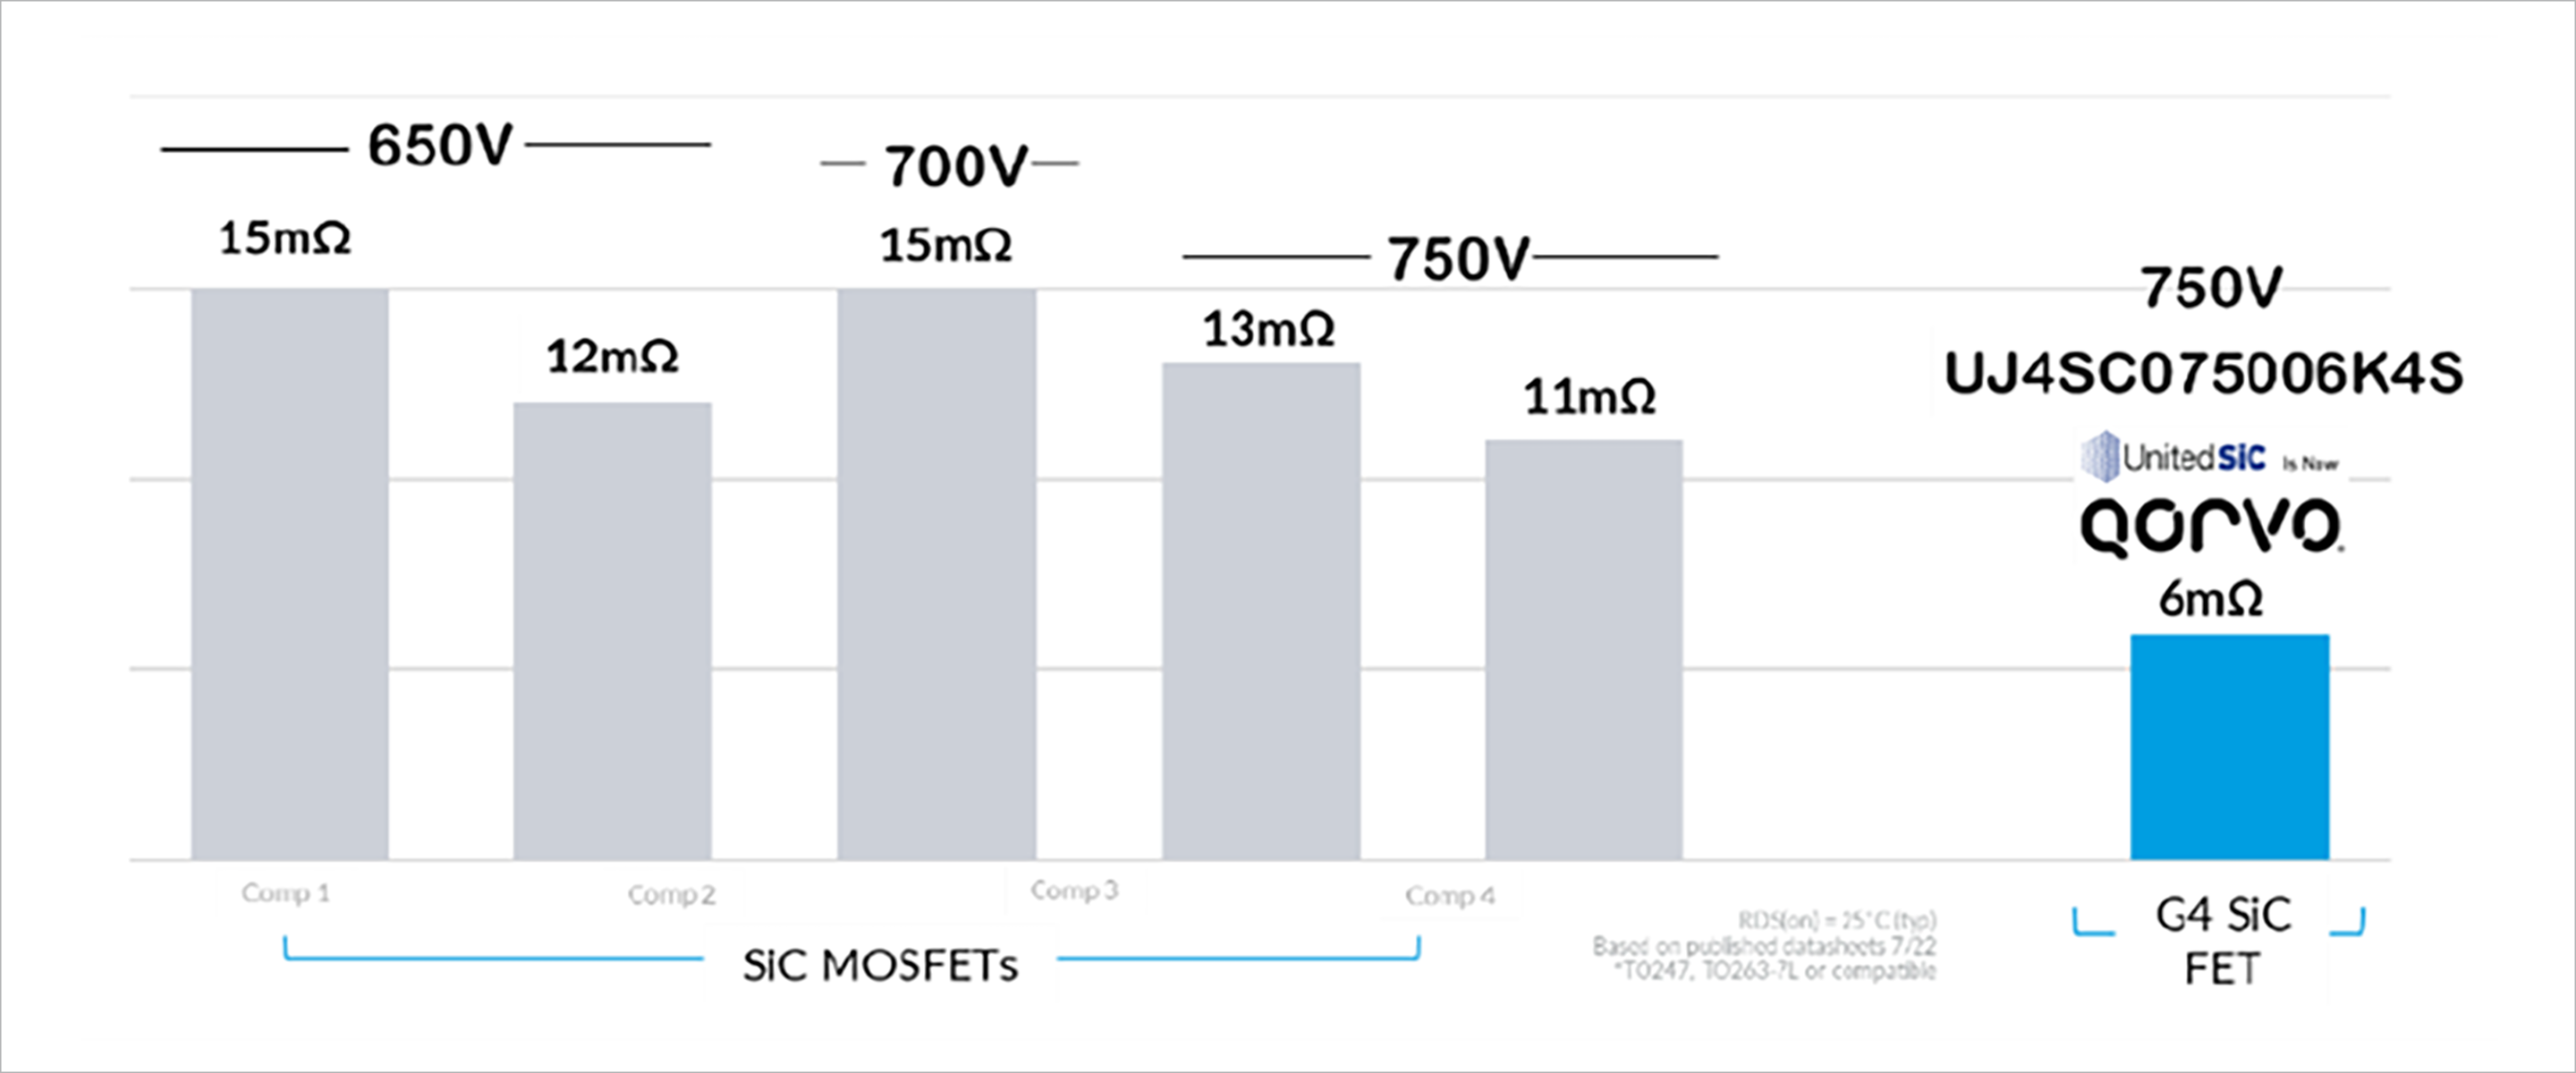 図4：750V Gen4 Qorvo SiCFETの低オン抵抗UJ4SC075006K4Sと、同様の650V～750Vクラスの競合SiC MOSFETとの比較